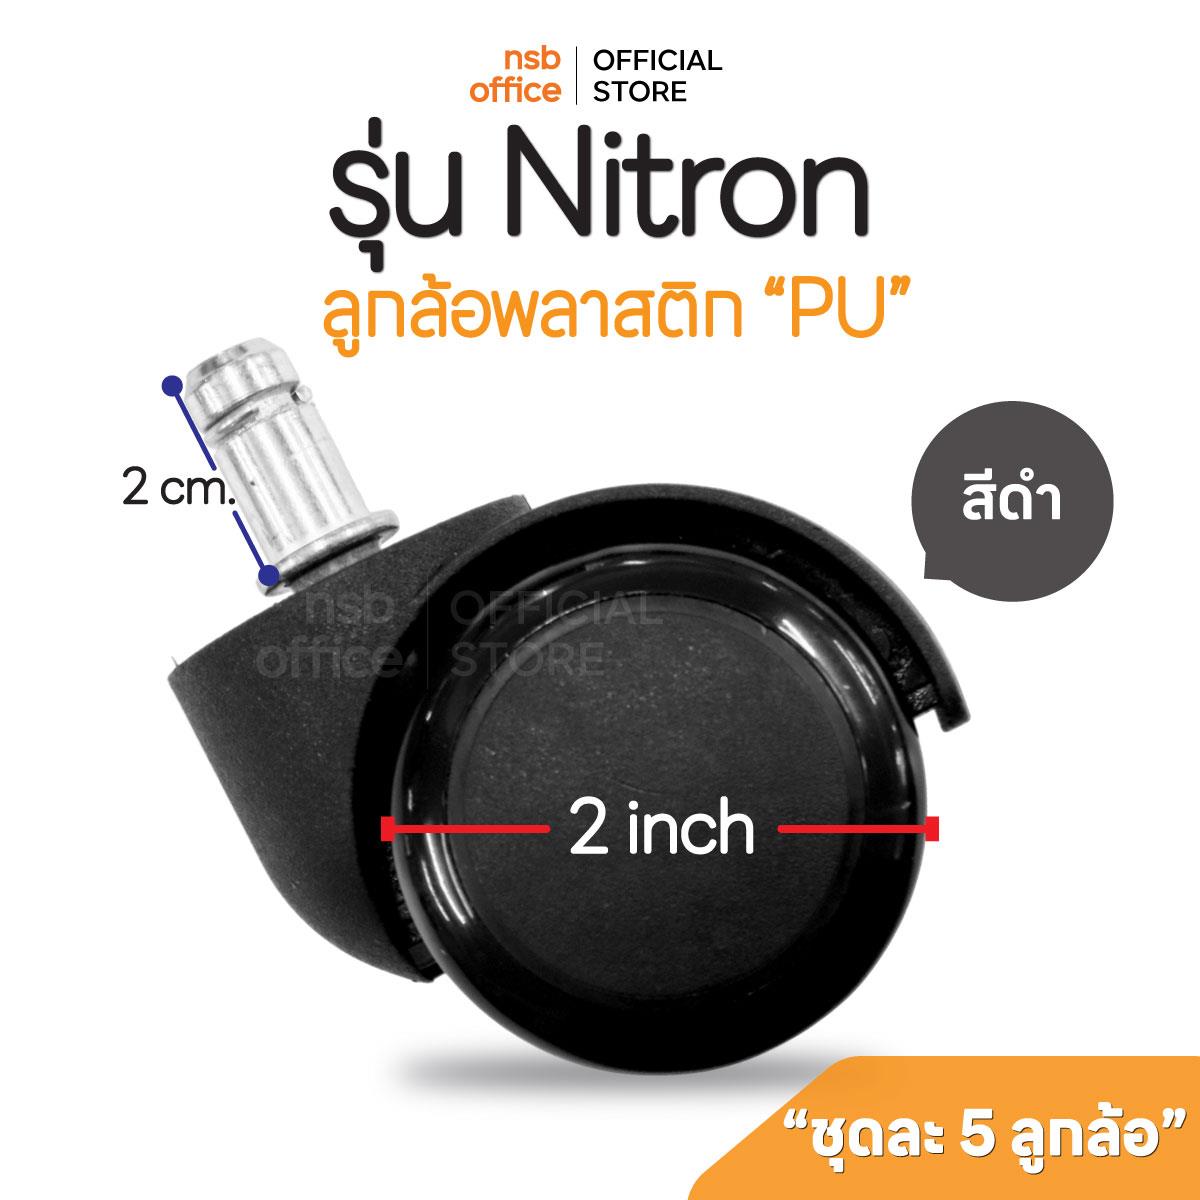 B27A030:ลูกล้อเก้าอี้พลาสติกพียู (PU สีดำ) รุ่น Nitron (ไนตรอน) ขนาด 50 มม. 2 นิ้ว แบบเสียบ ชุดละ 5 ลูก